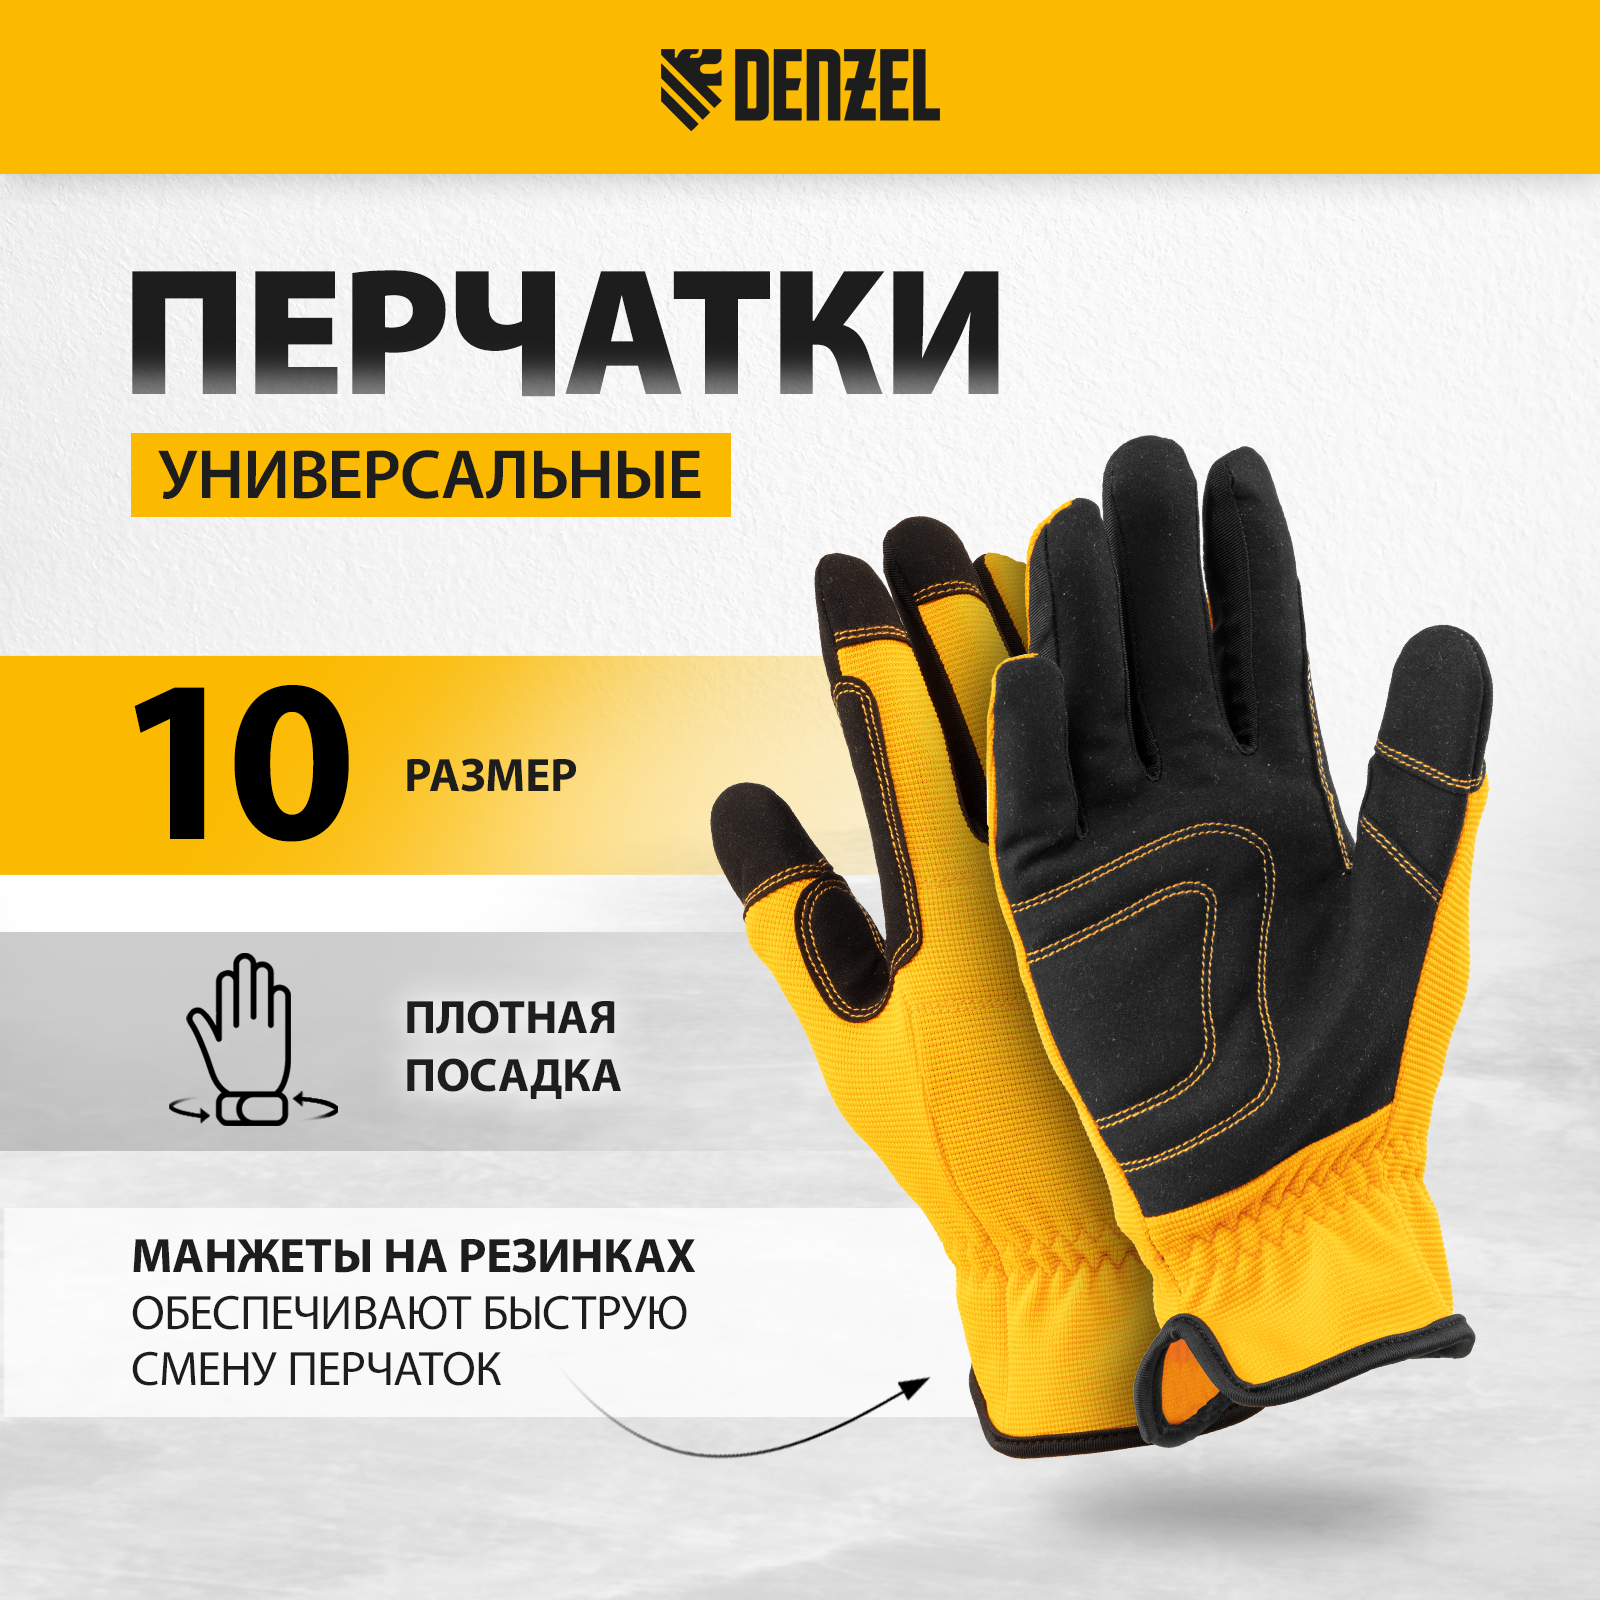 Перчатки универсальные DENZEL размер 10 67997 универсальные перчатки tegera